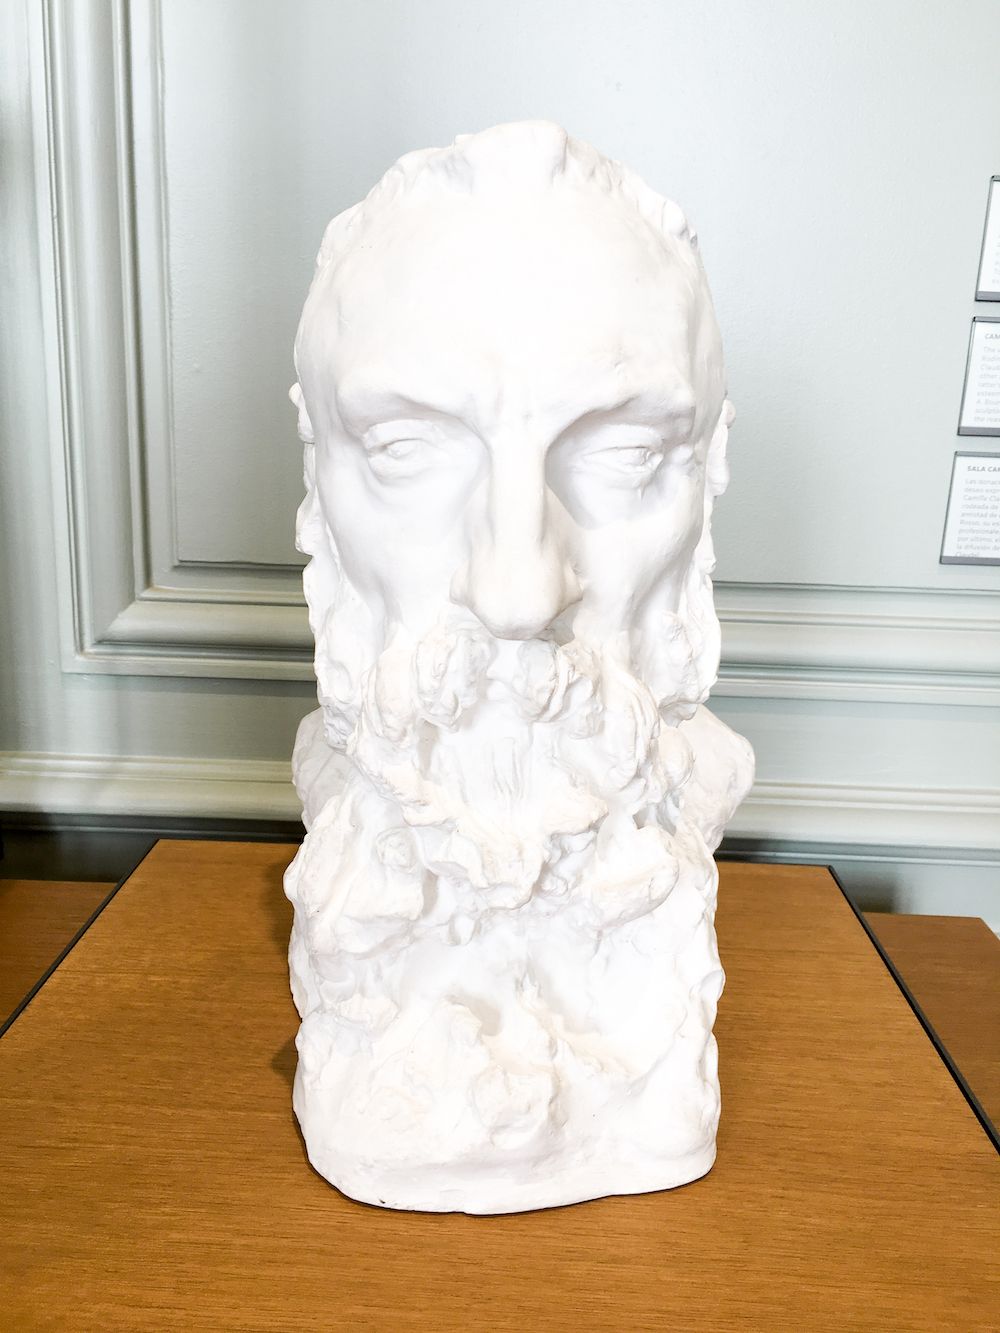 Bearded man sculpture at Musée Rodin